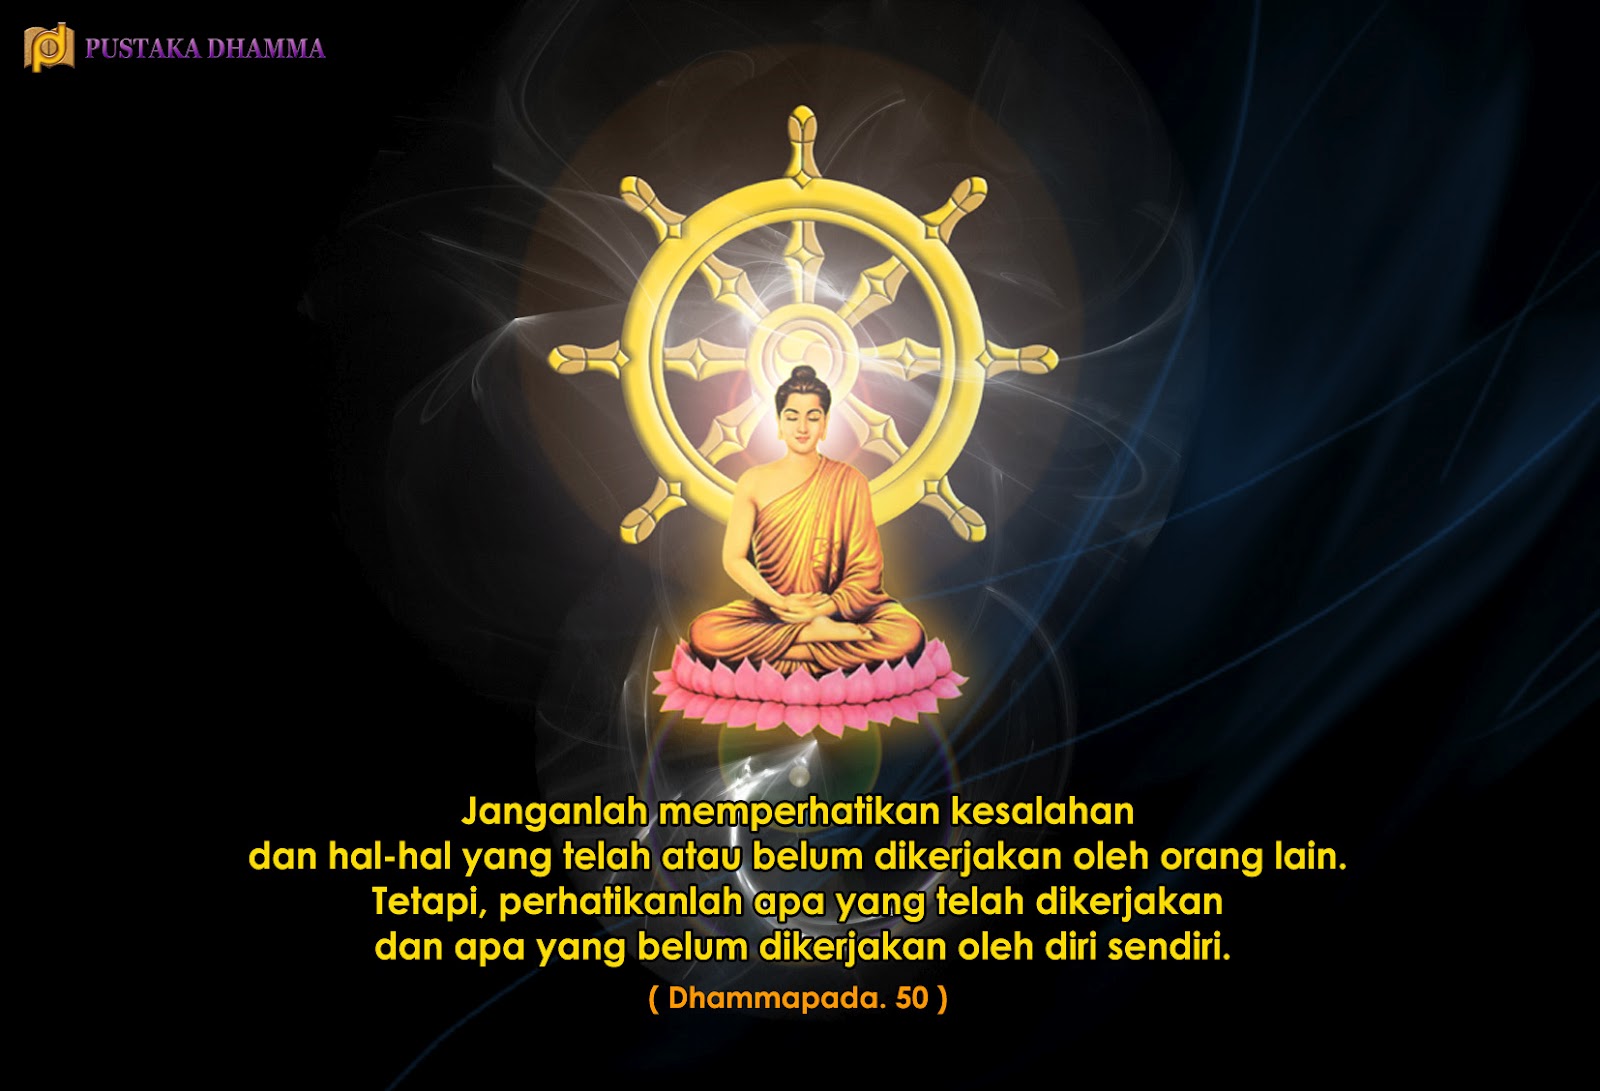 PUSTAKA DHAMMA: Sabda Sang Buddha (13)